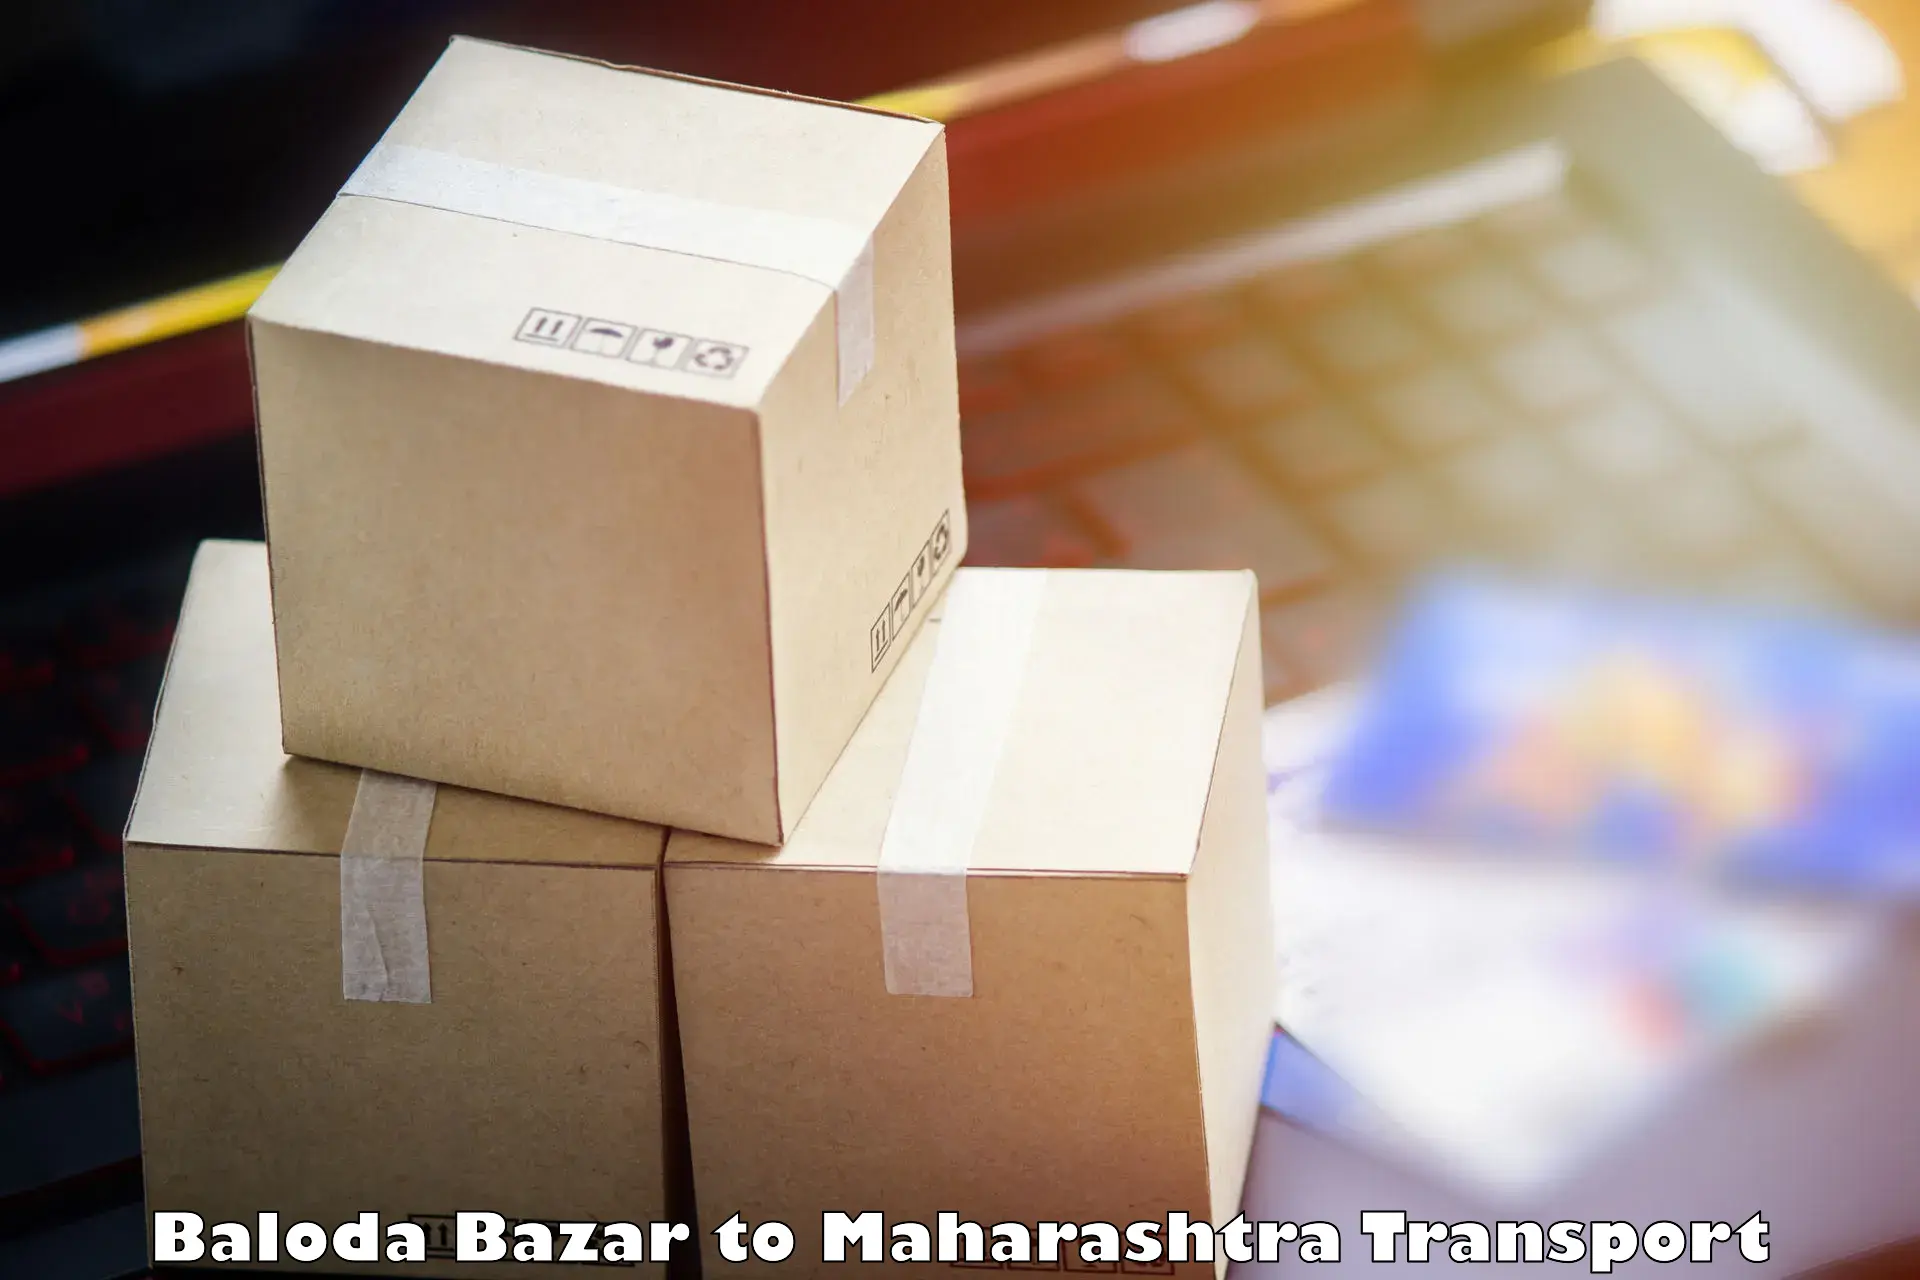 Two wheeler parcel service Baloda Bazar to Ulhasnagar